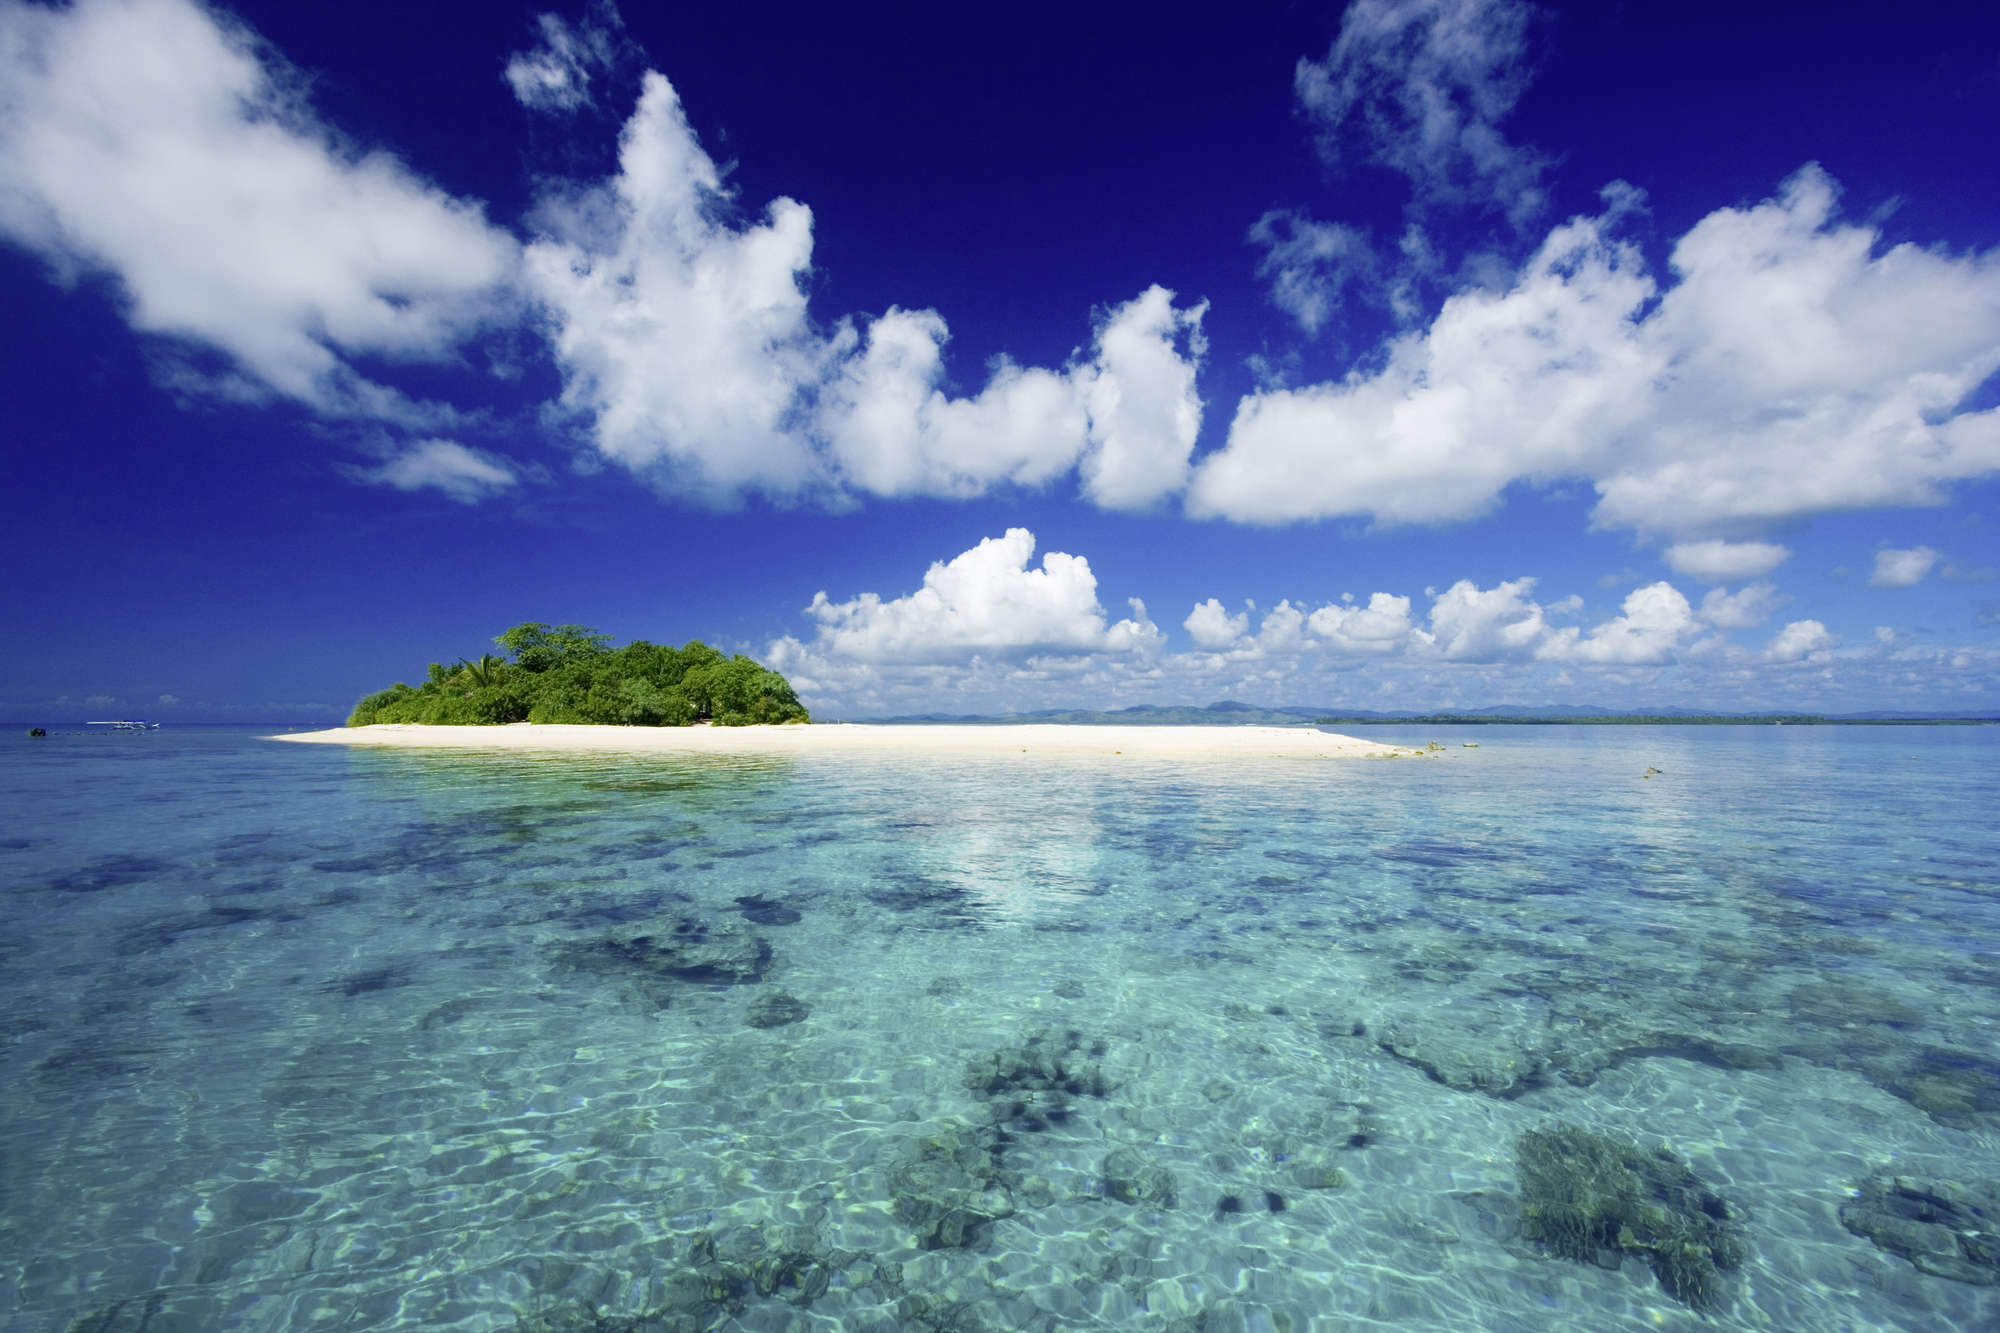             Île Papier peint panoramique mer avec petite île sur intissé nacré lisse
        